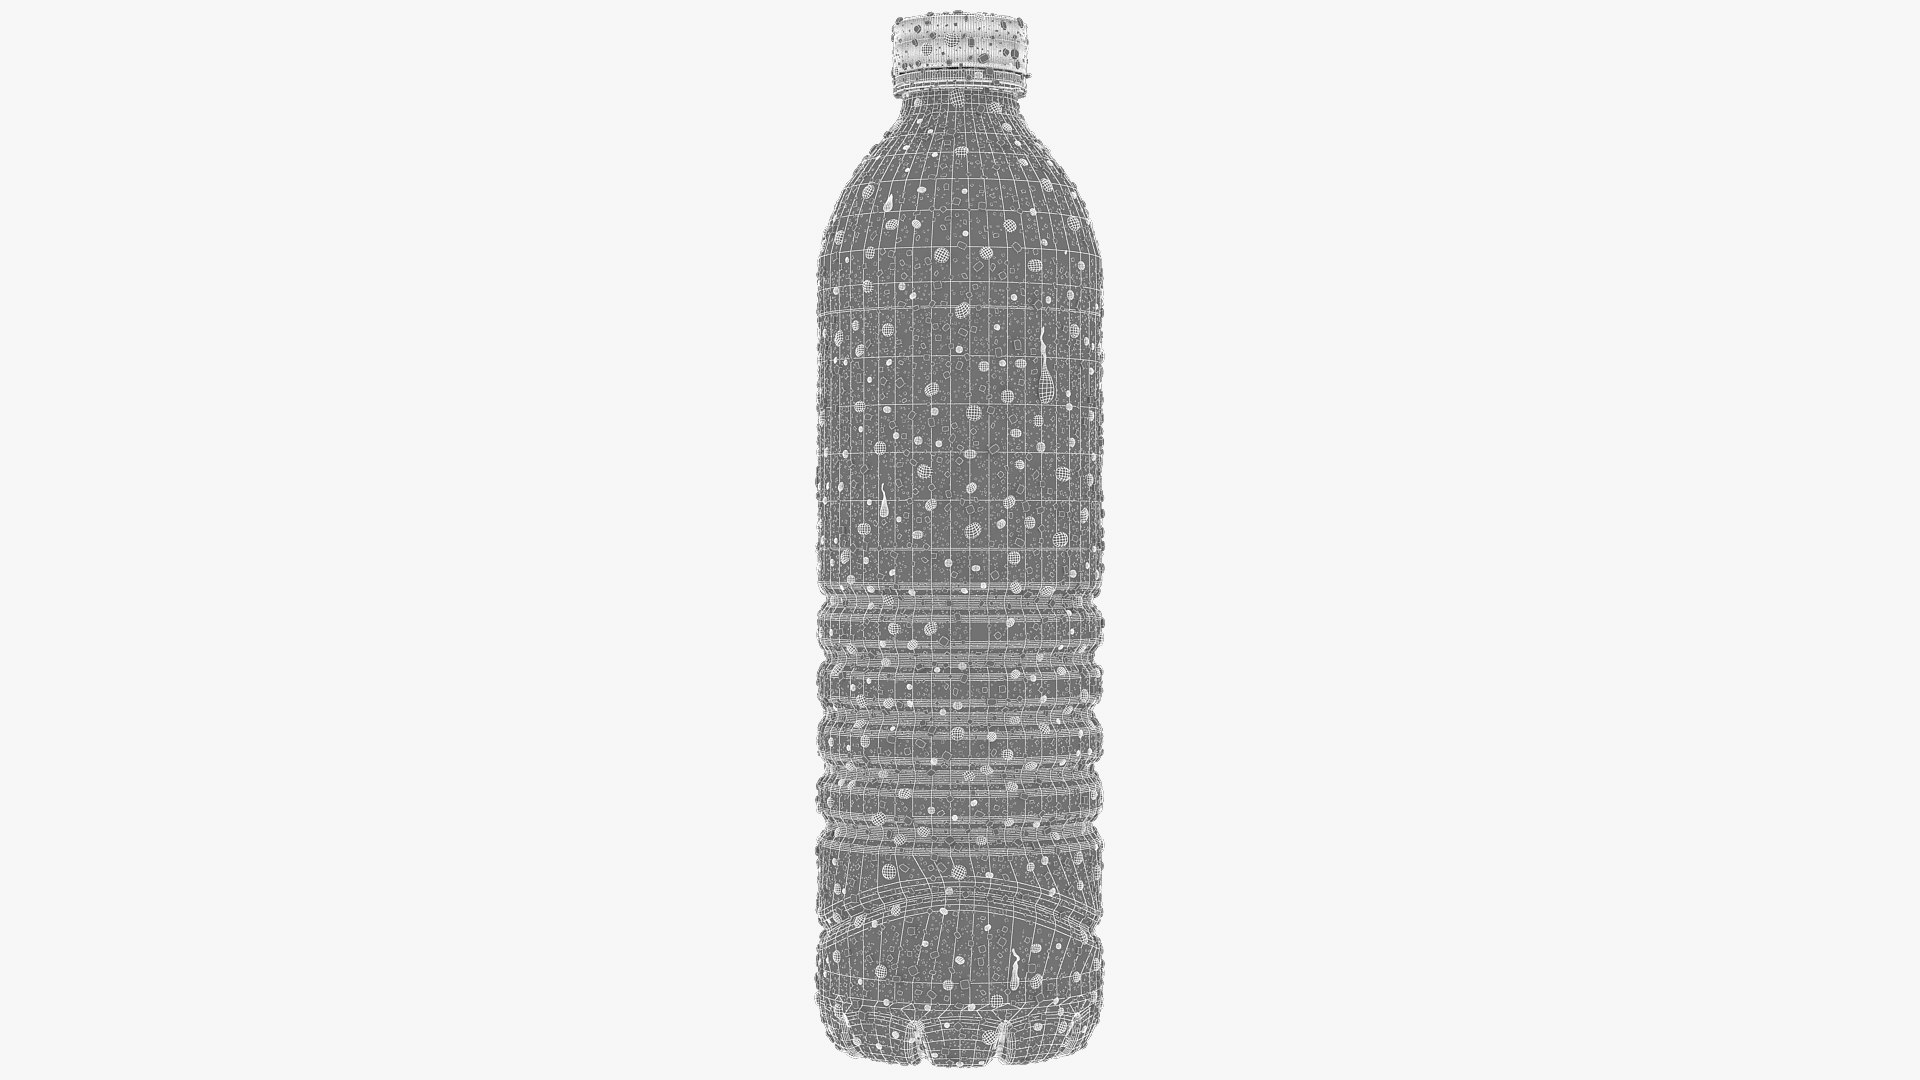 Water Bottle 50 CL 16 OZ | 3D model